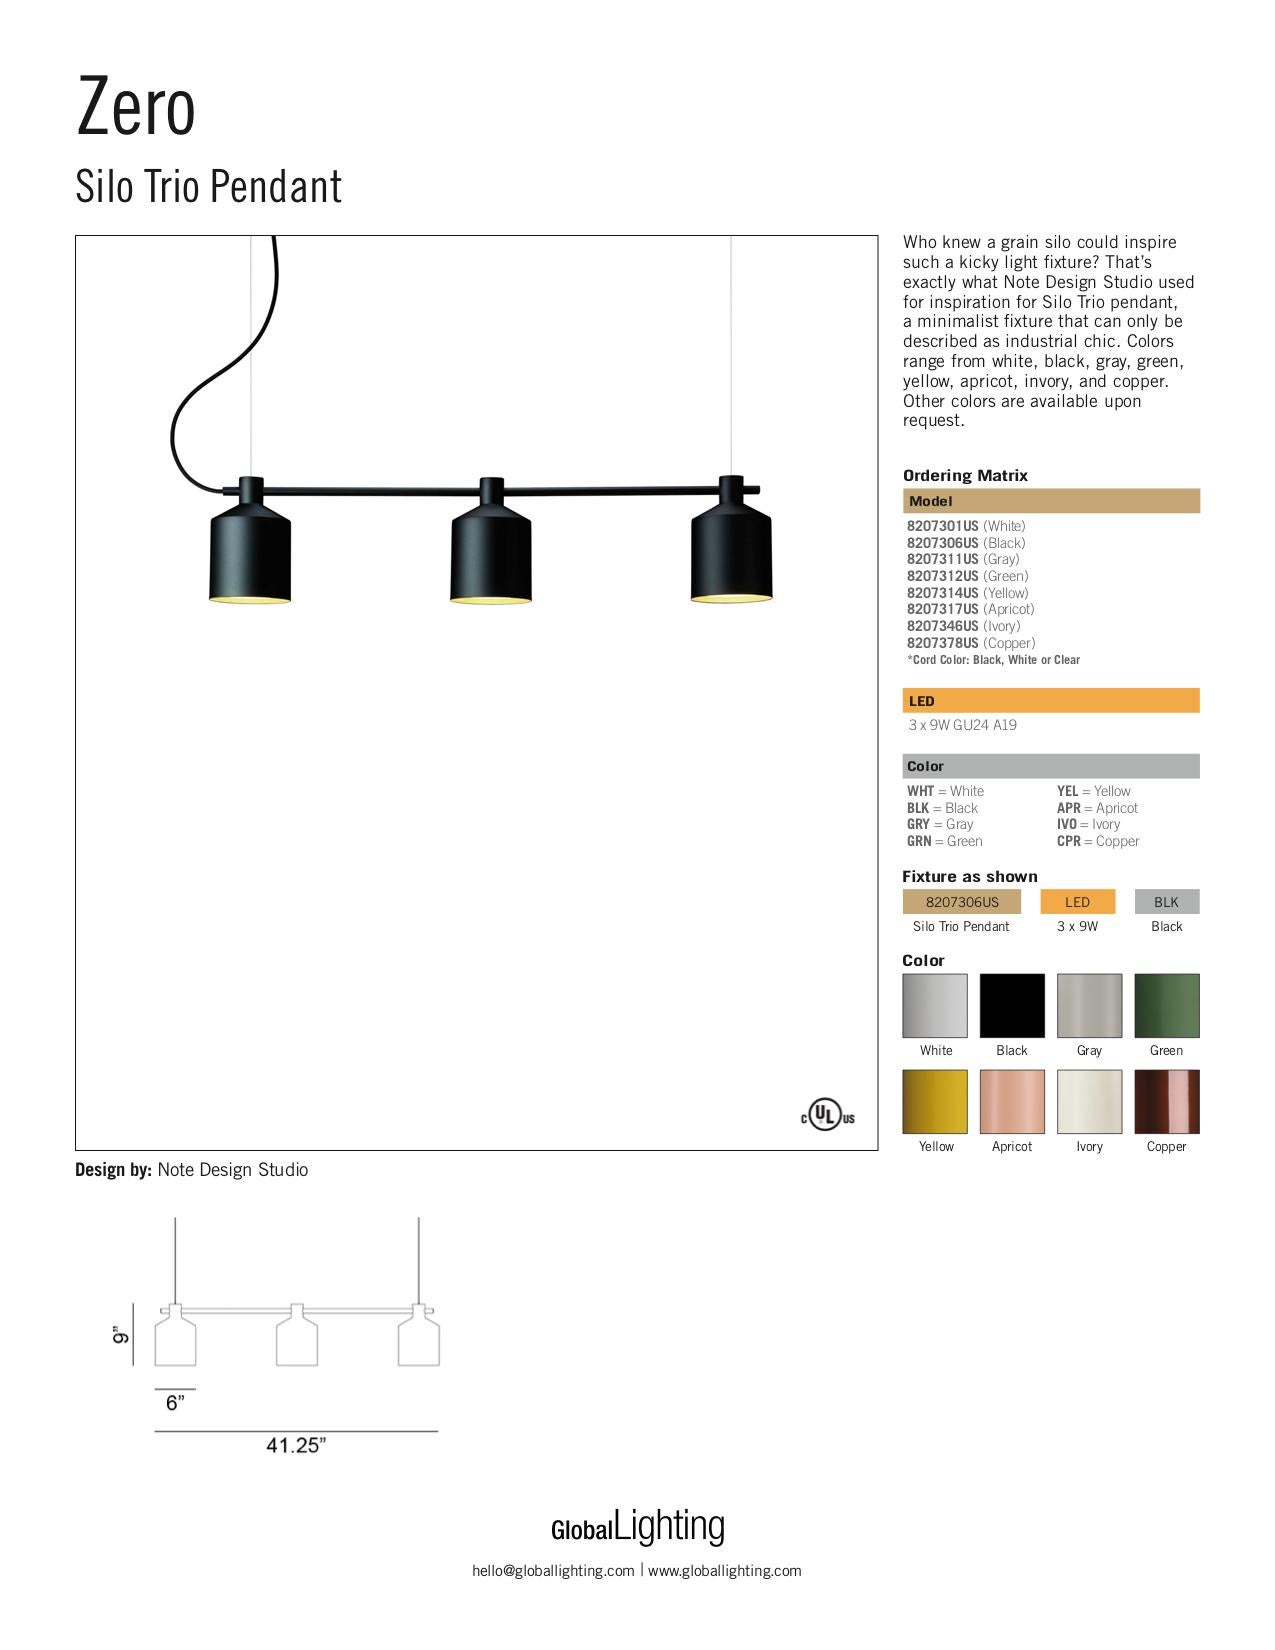 Contemporary Zero Silo Trio LED Pendant in Black by Note Design Studio, 1stdibs New York For Sale